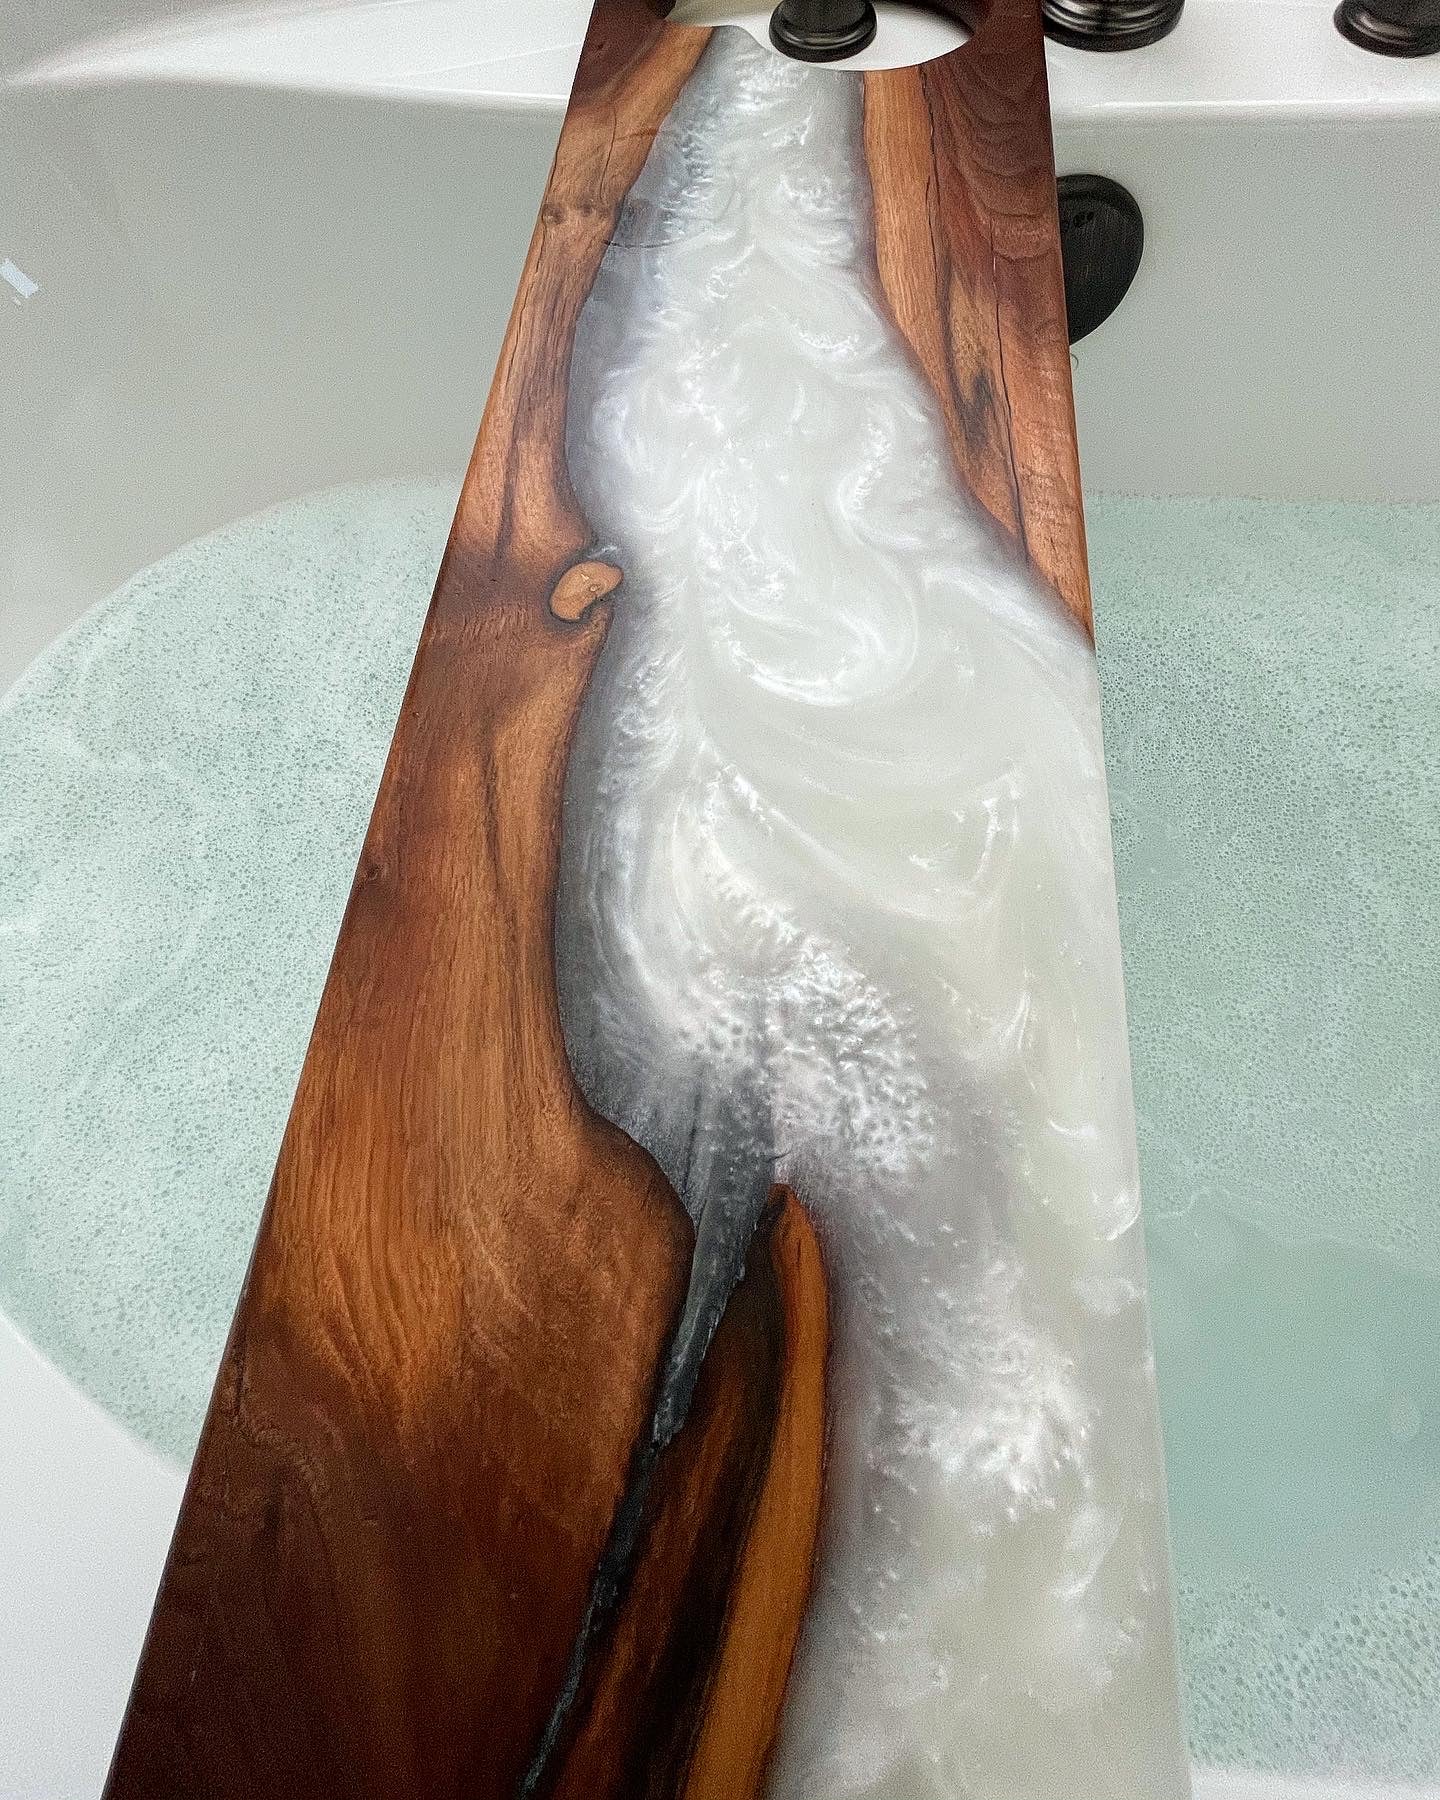 Custom order bath tray with epoxy resin